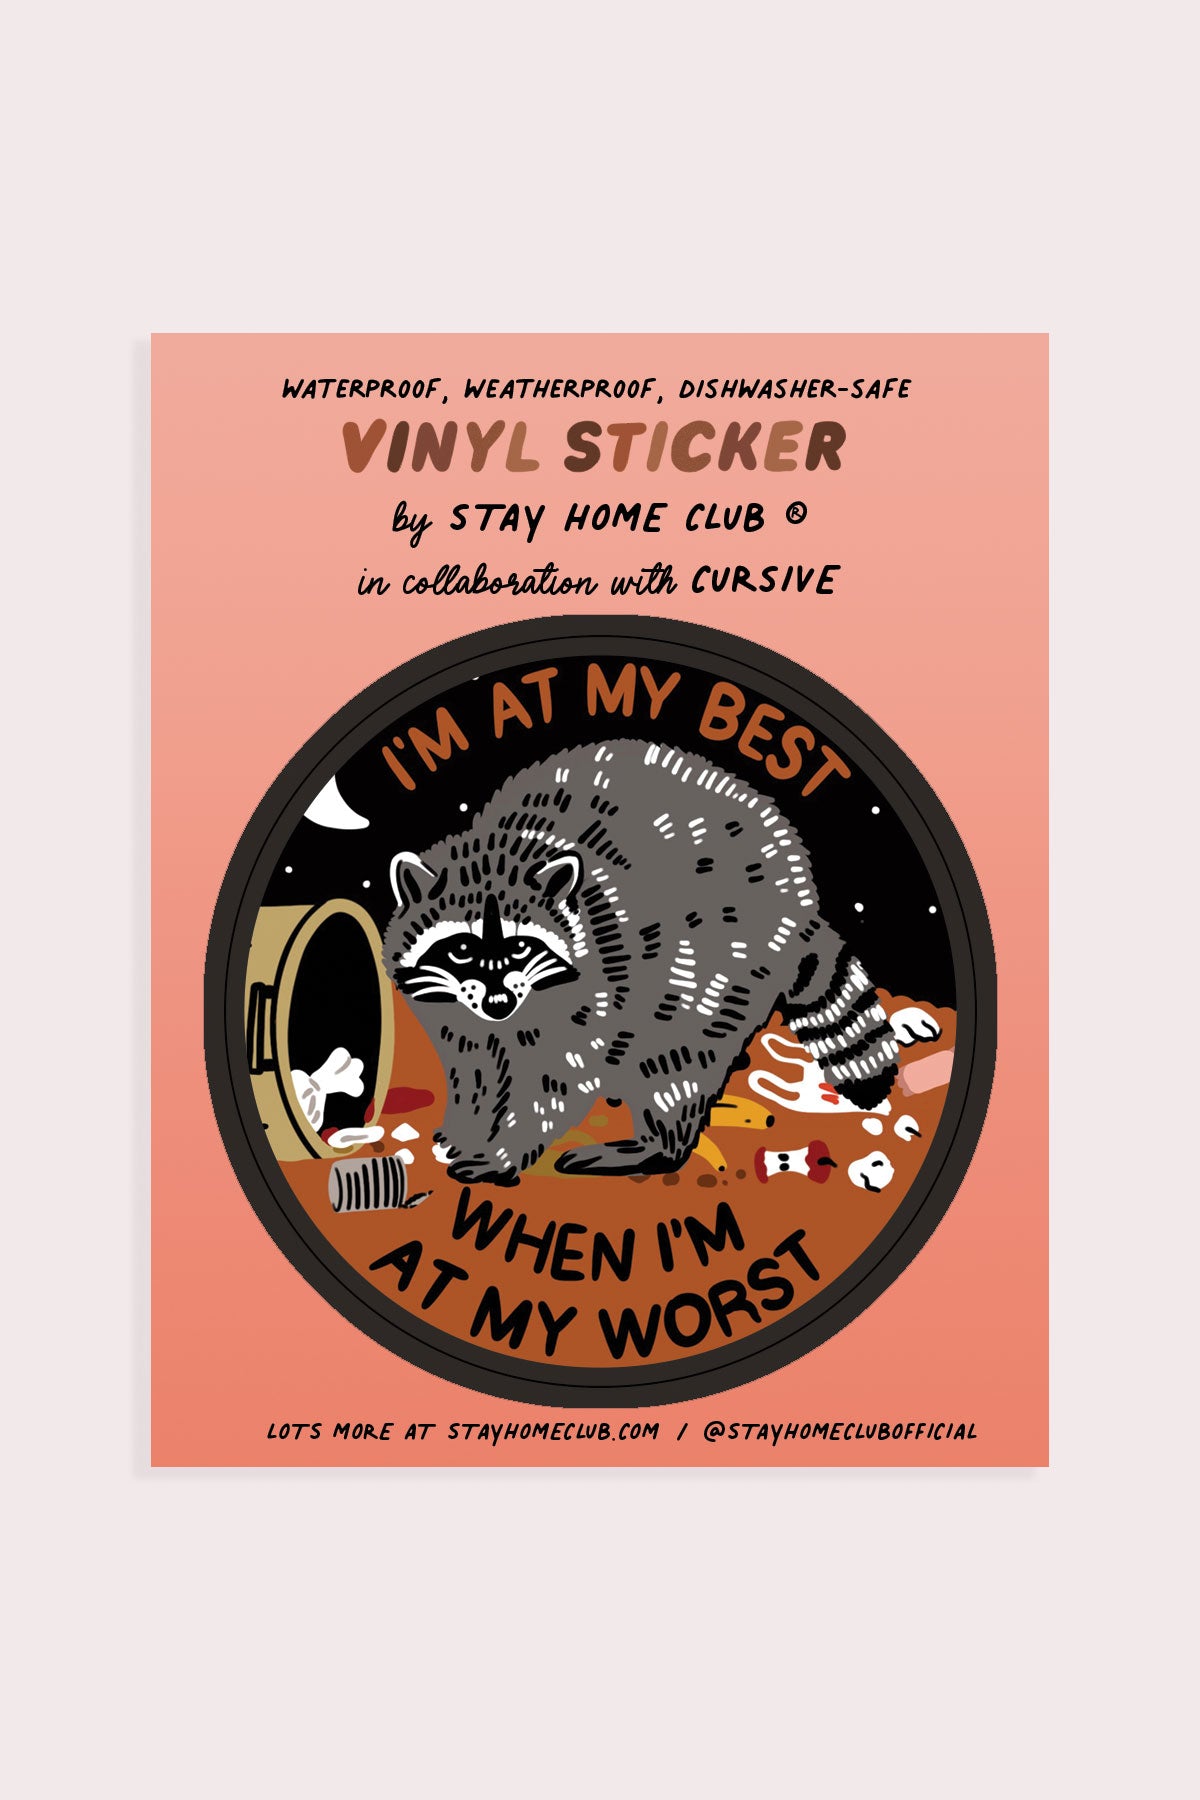 At My Best Vinyl Sticker